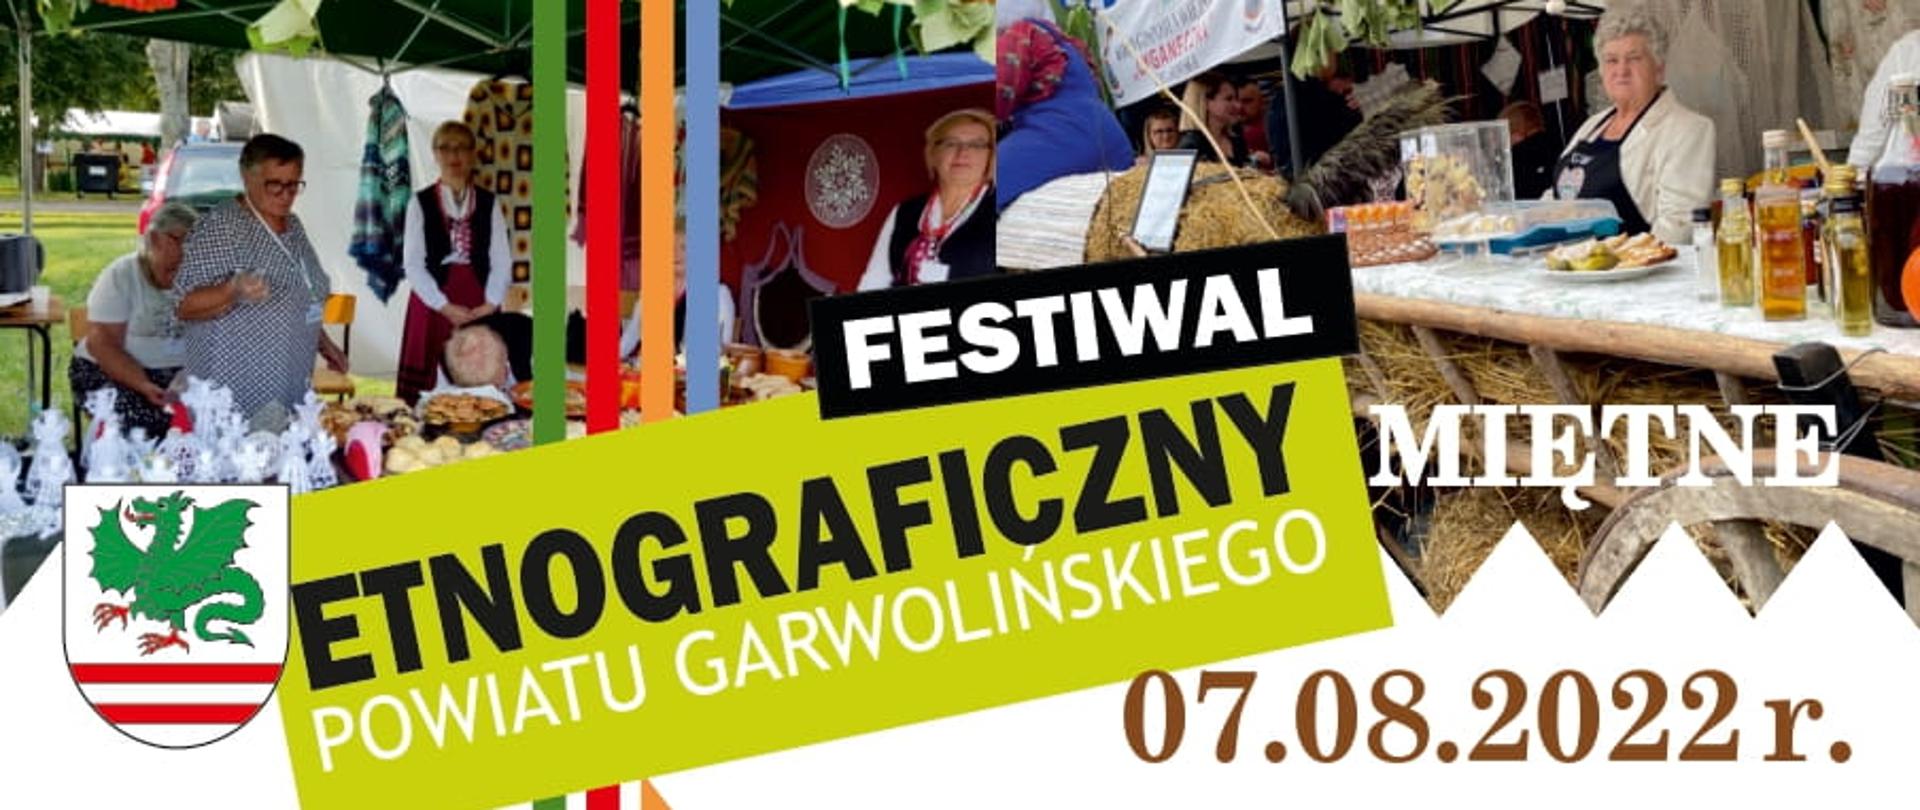 Festiwal Etnograficzny - zapowiedź 